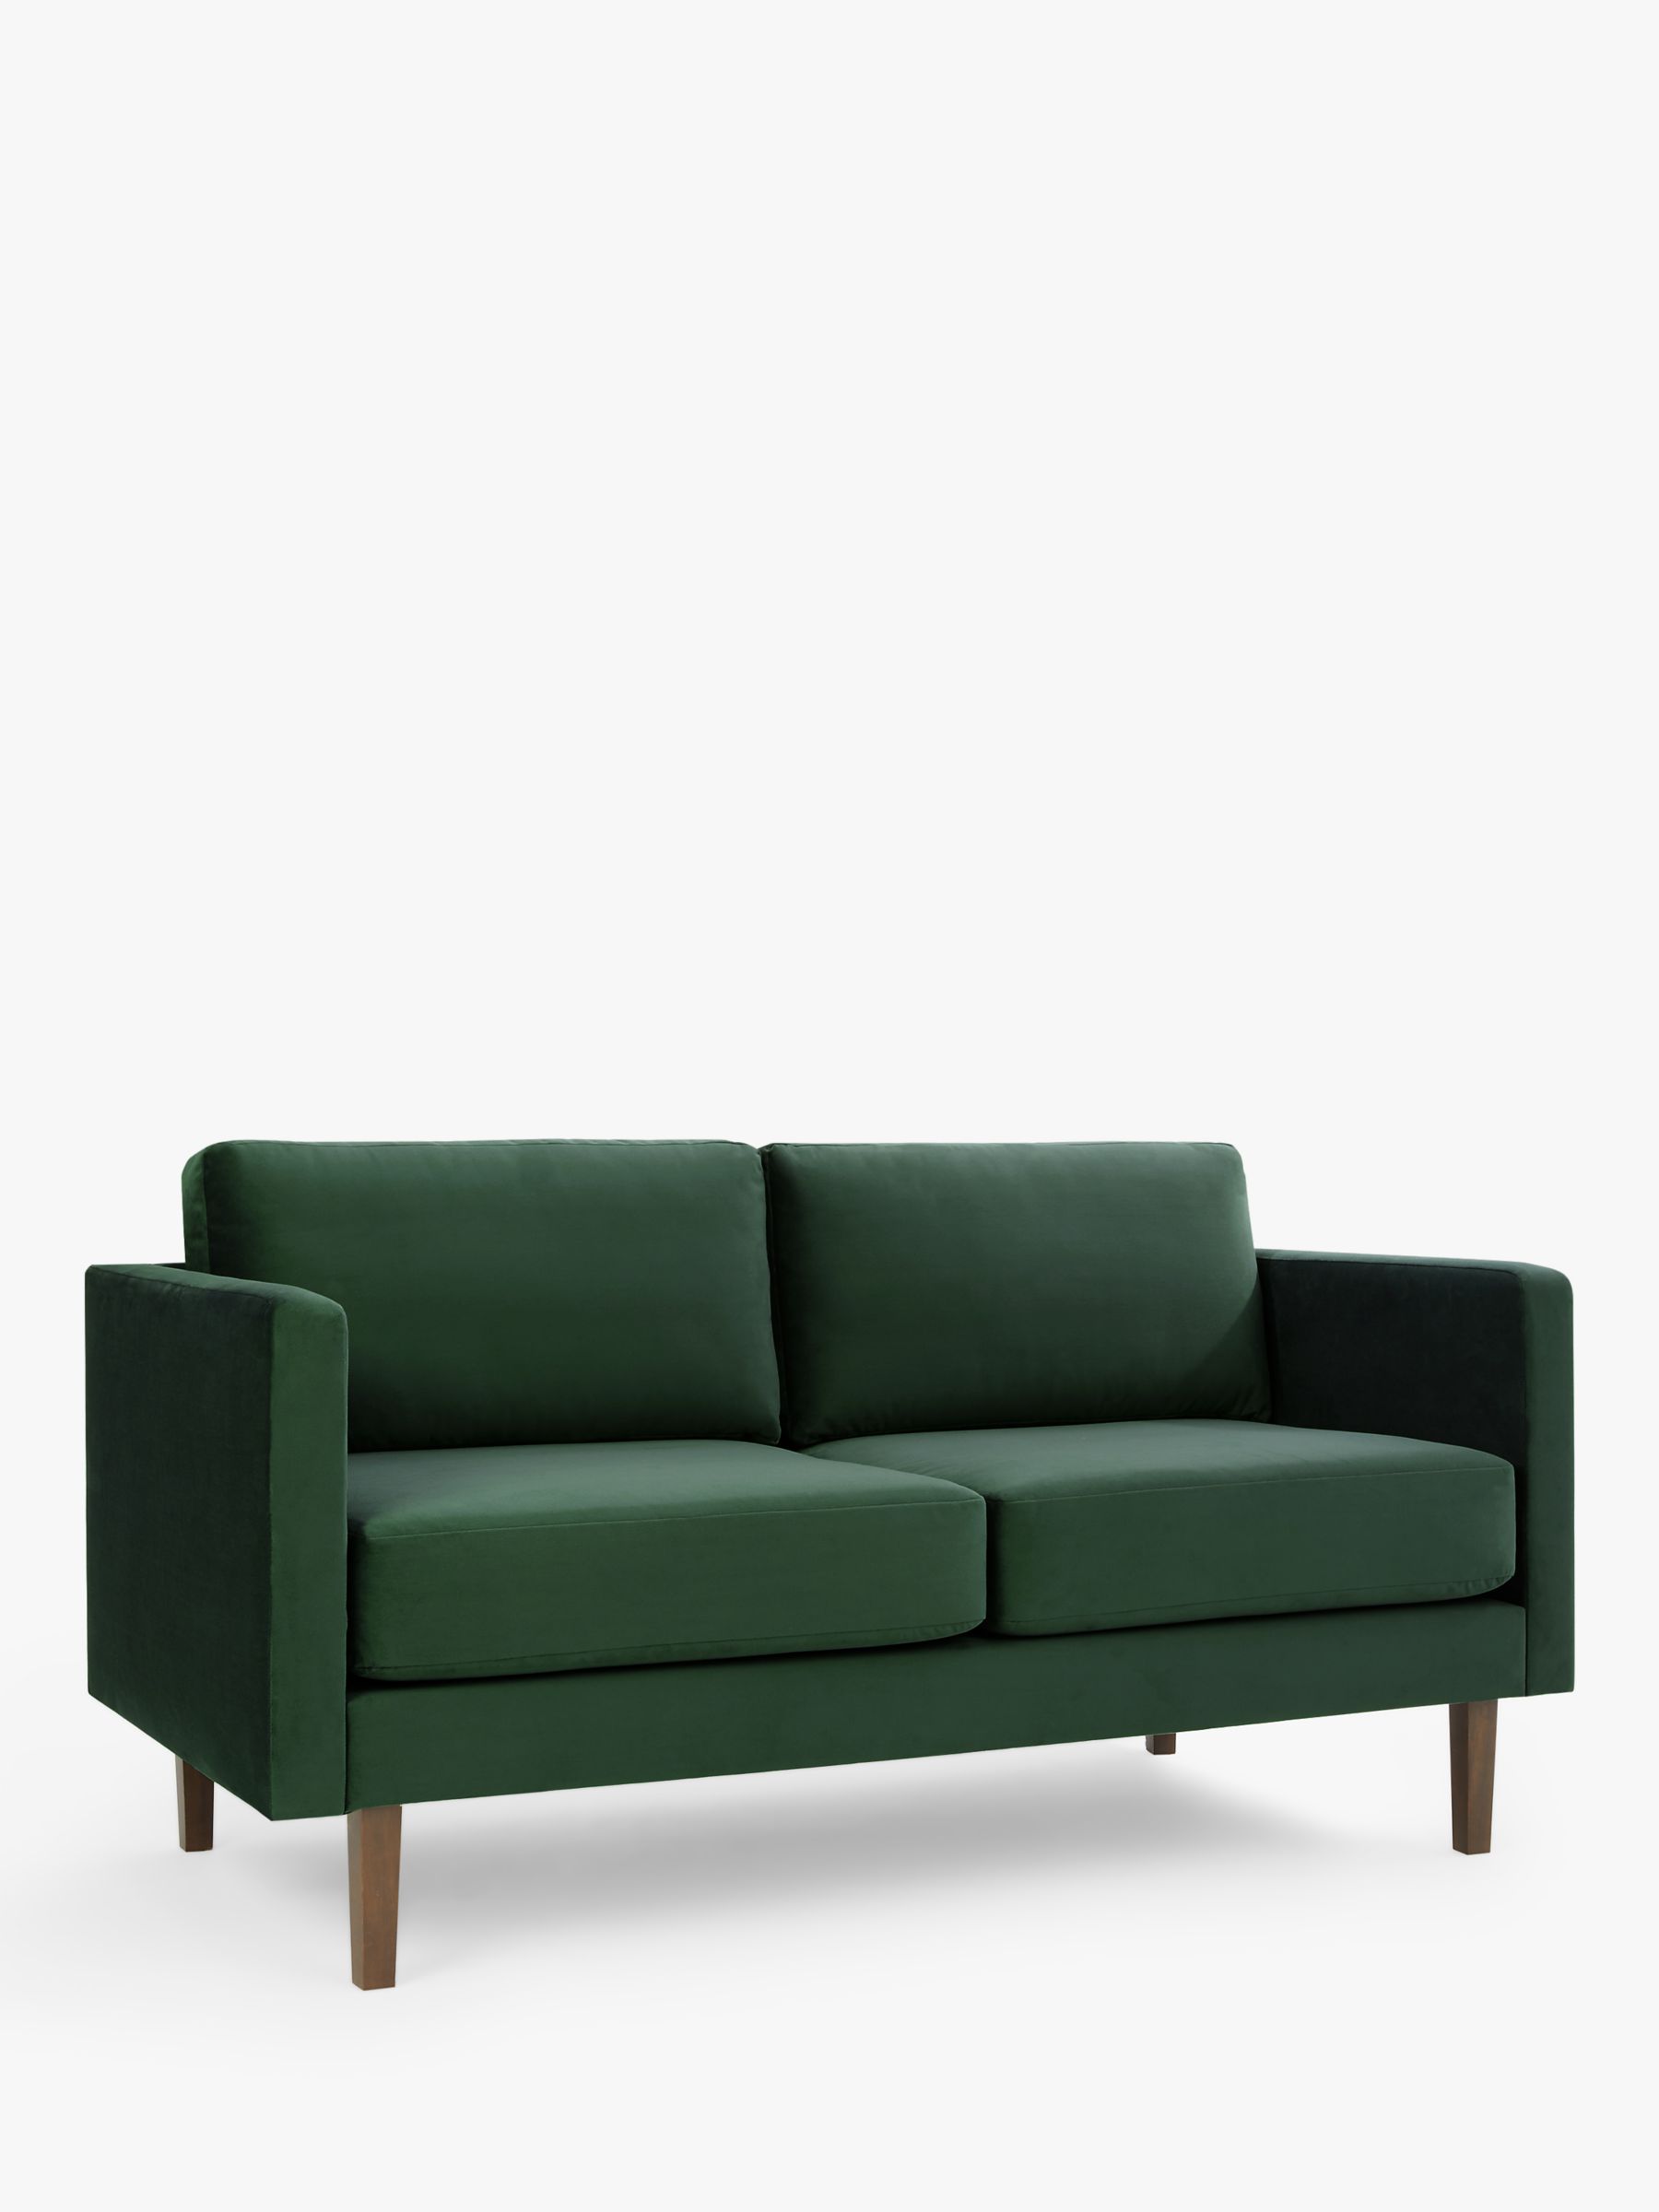 Eavis Range, John Lewis ANYDAY Eavis Medium 2 Seater Sofa, Dark Leg, Bottle Green Smooth Velvet